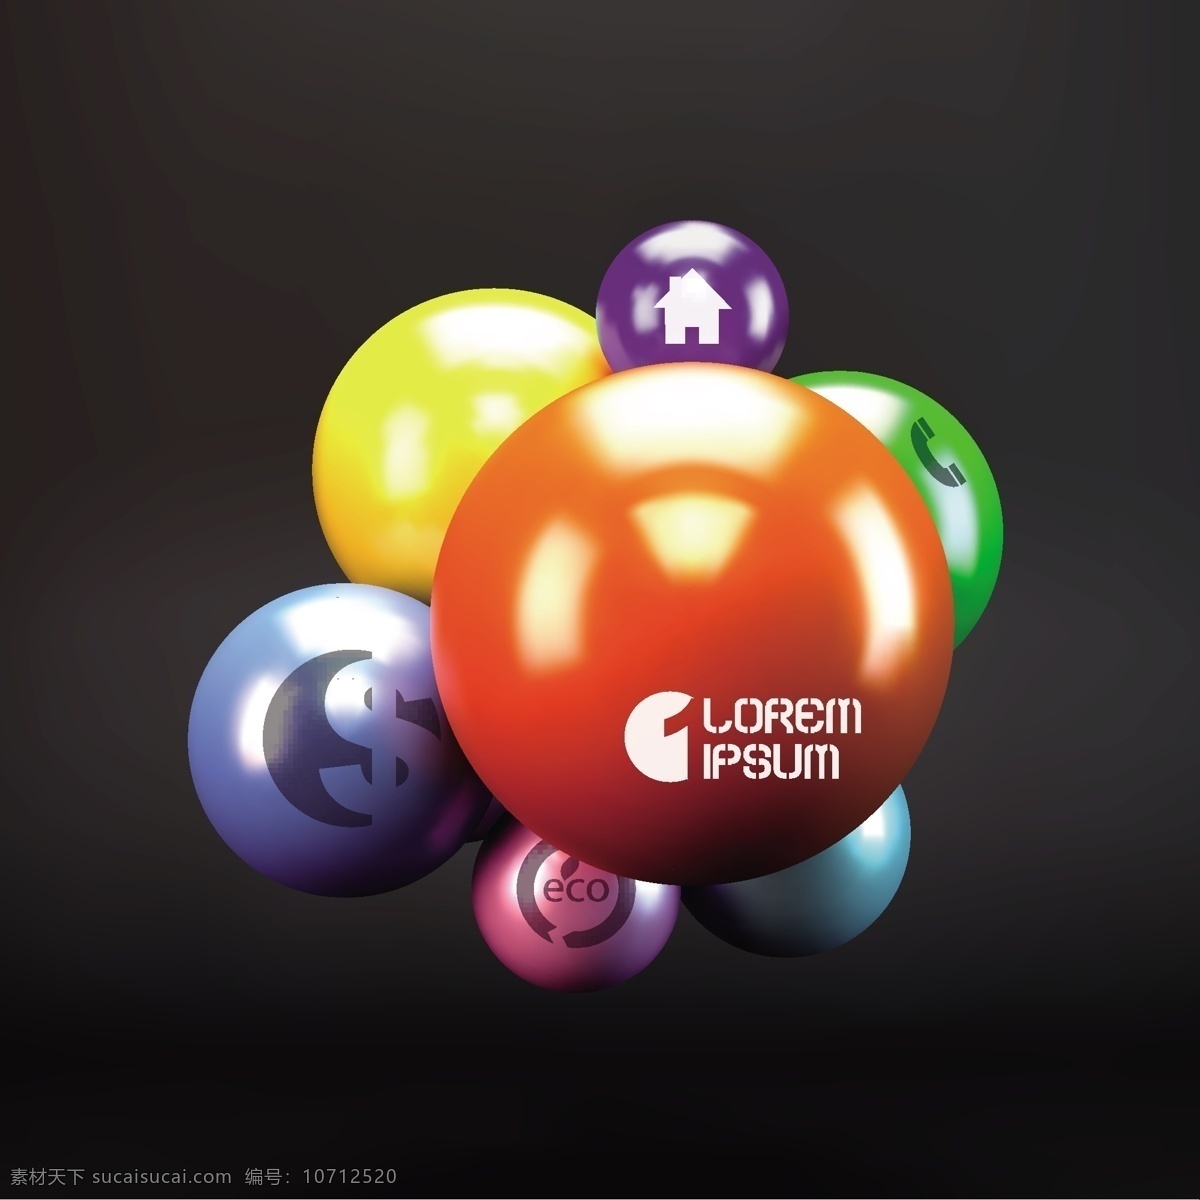 3d 球 图 背景 彩色 立体 球体 圆球 装饰 彩色球体 3d球体 矢量图 其他矢量图